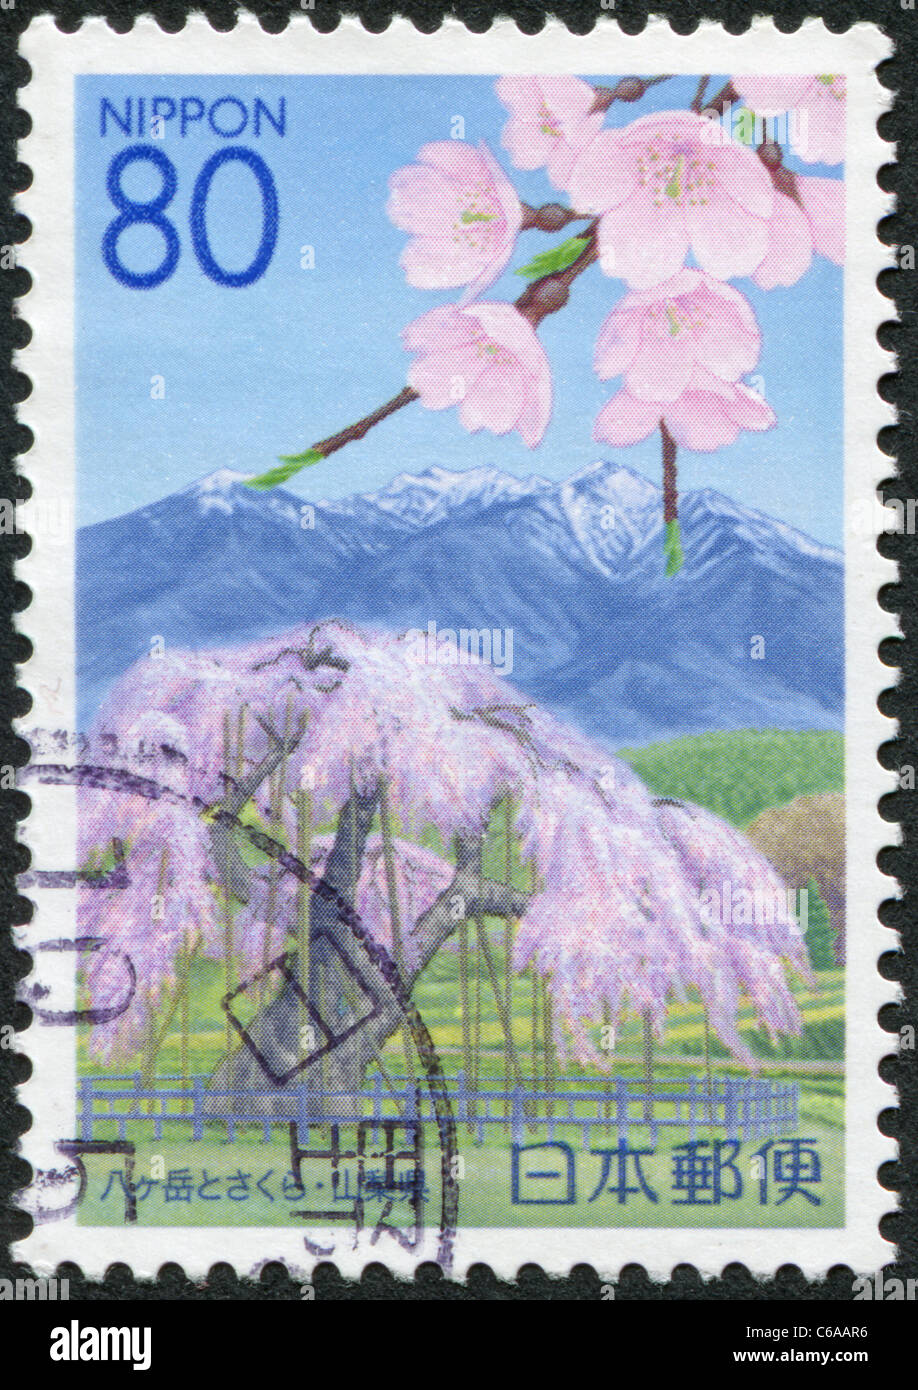 Japon - 2007 : timbre imprimé au Japon, préfecture de Yamanashi, flowering cherry et représente le Mont Yatsugatake Banque D'Images